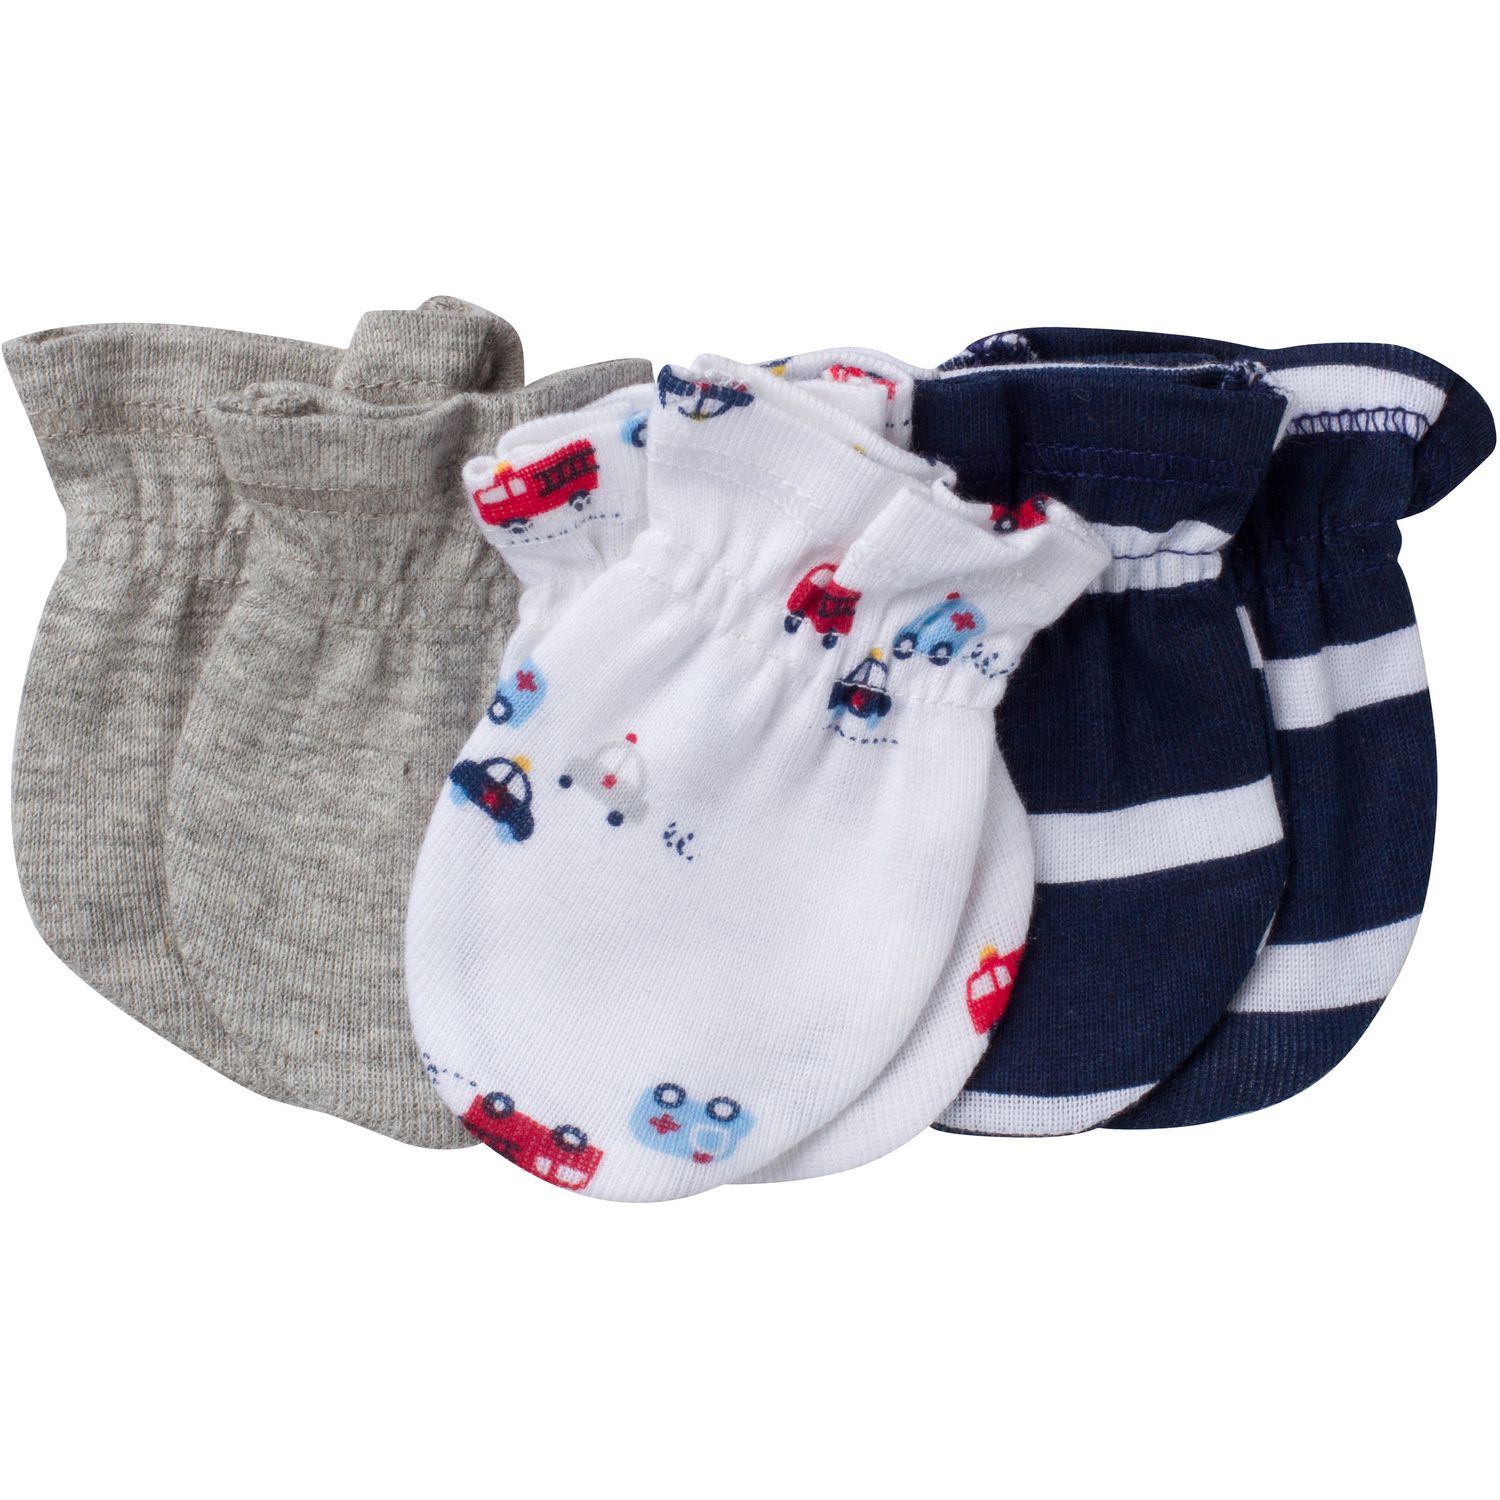 Gerber Childrens Wear Gerber Newborn Boys' Mittens – Pack of 3 ...